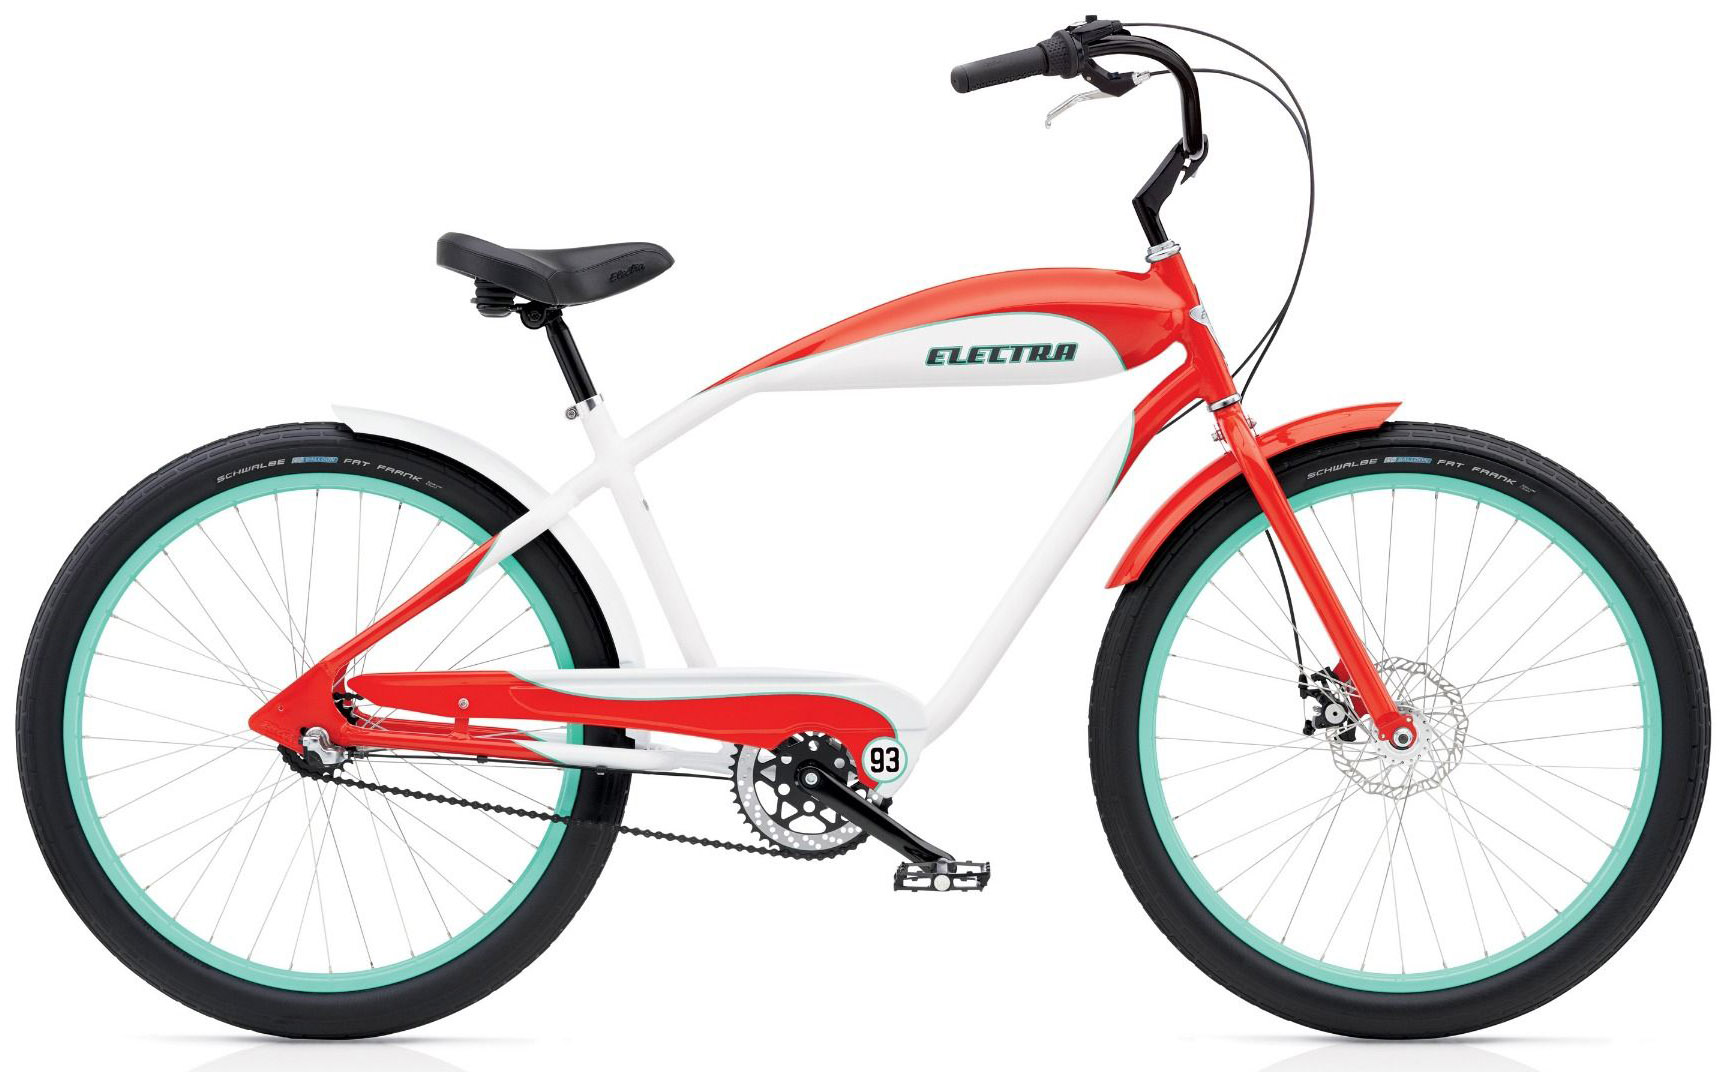  Отзывы о Велосипеде круизере Electra EBC93 3i 2020